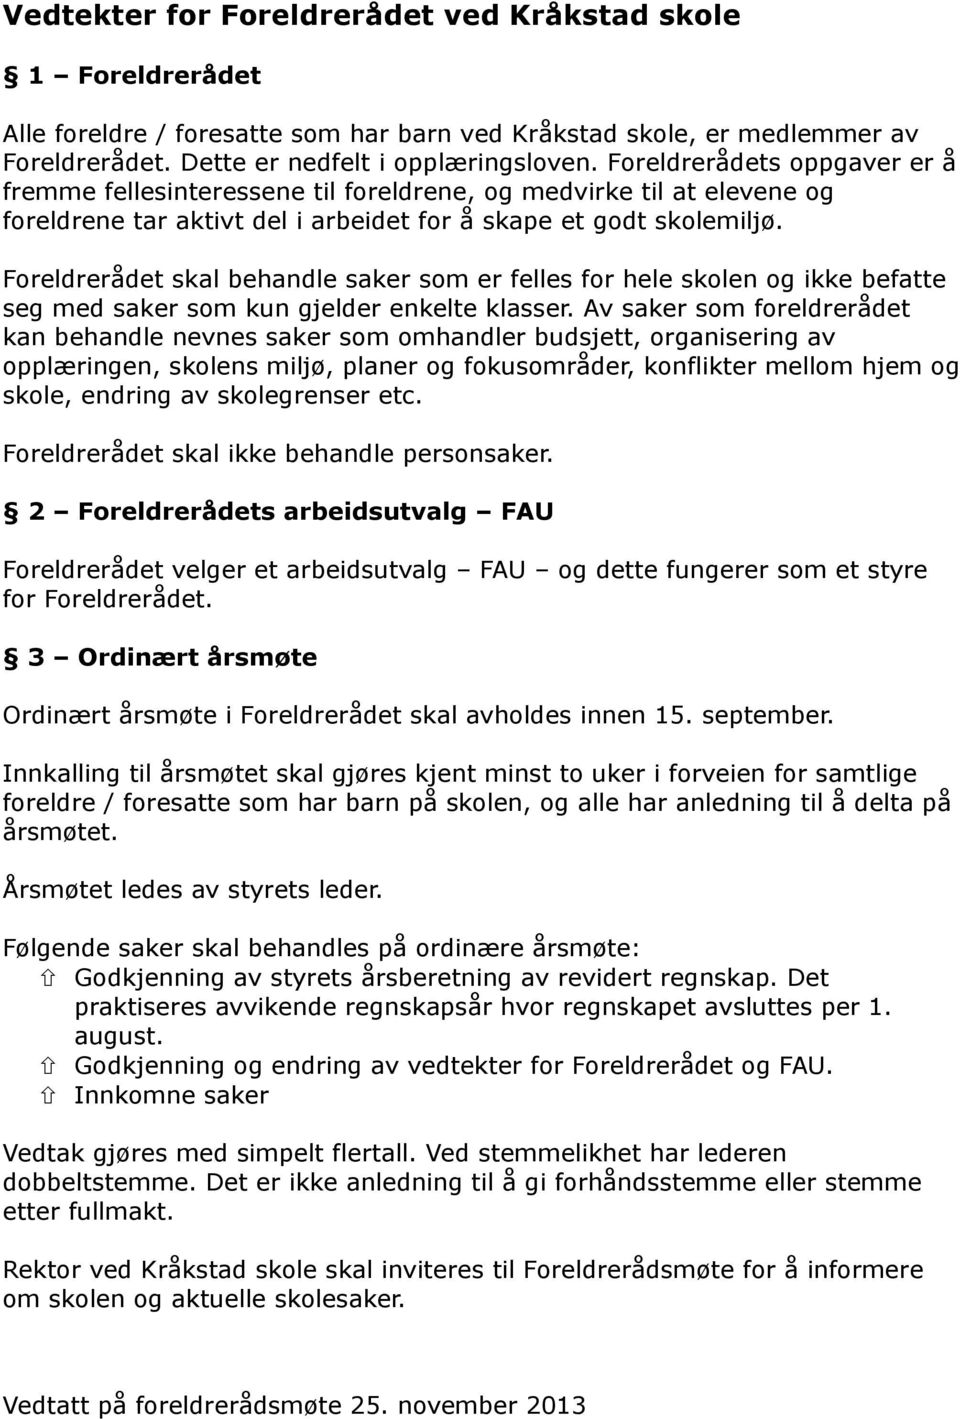 Vedtekter for FAU ved Kråkstad skole. - PDF Free Download